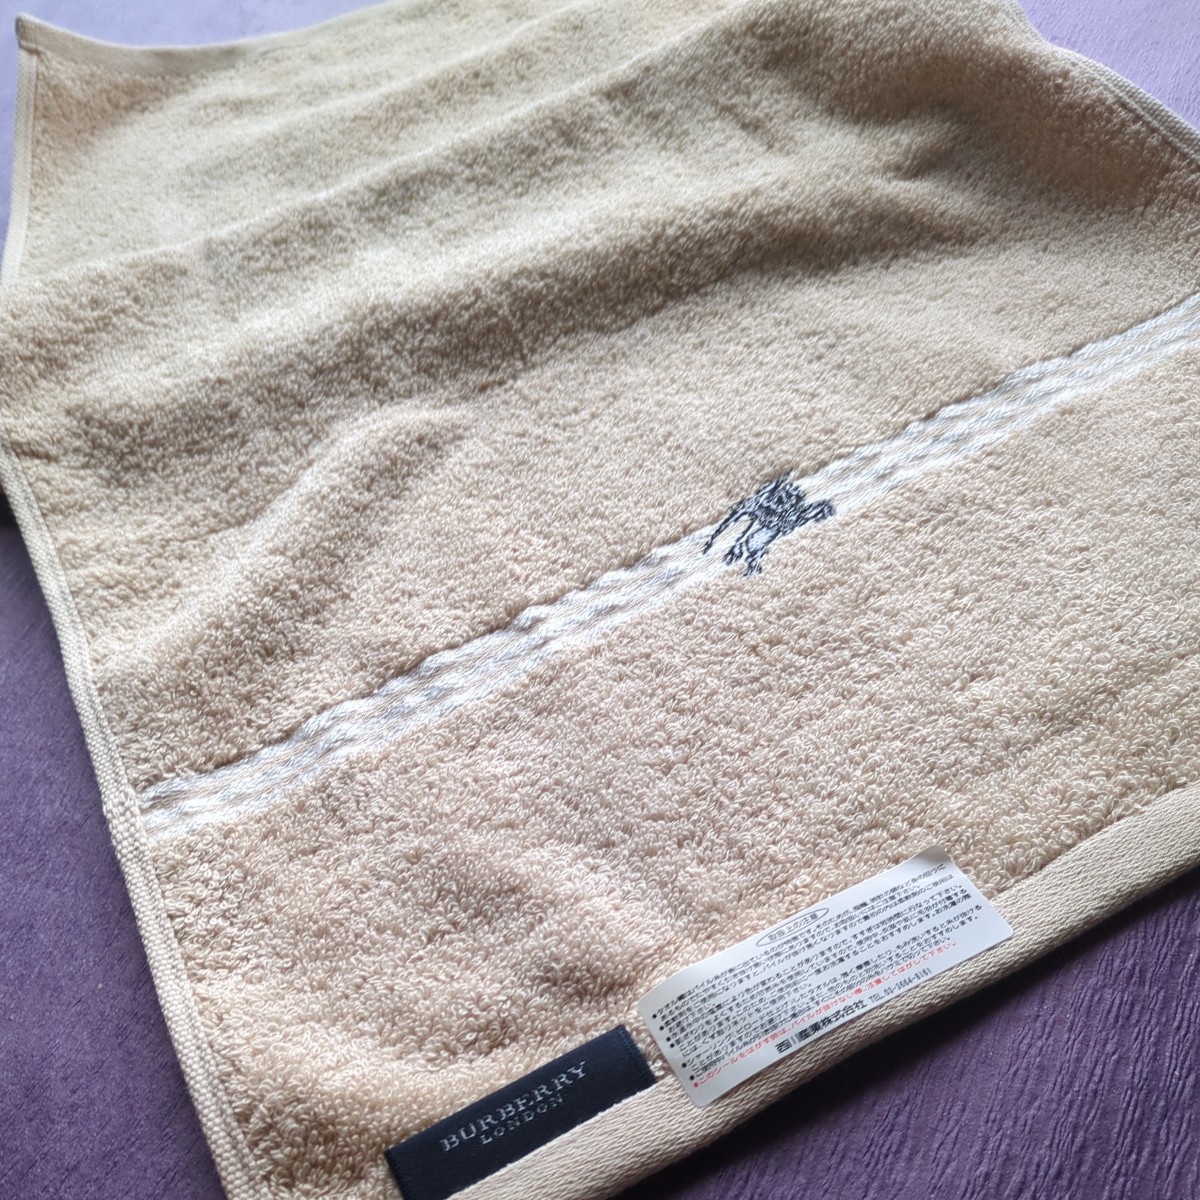  Burberry BURBERRY полотенце для лица 34×74cm хлопок 100% Logo вышивка ( чёрный ) бежевый Burberry London / запад река промышленность 